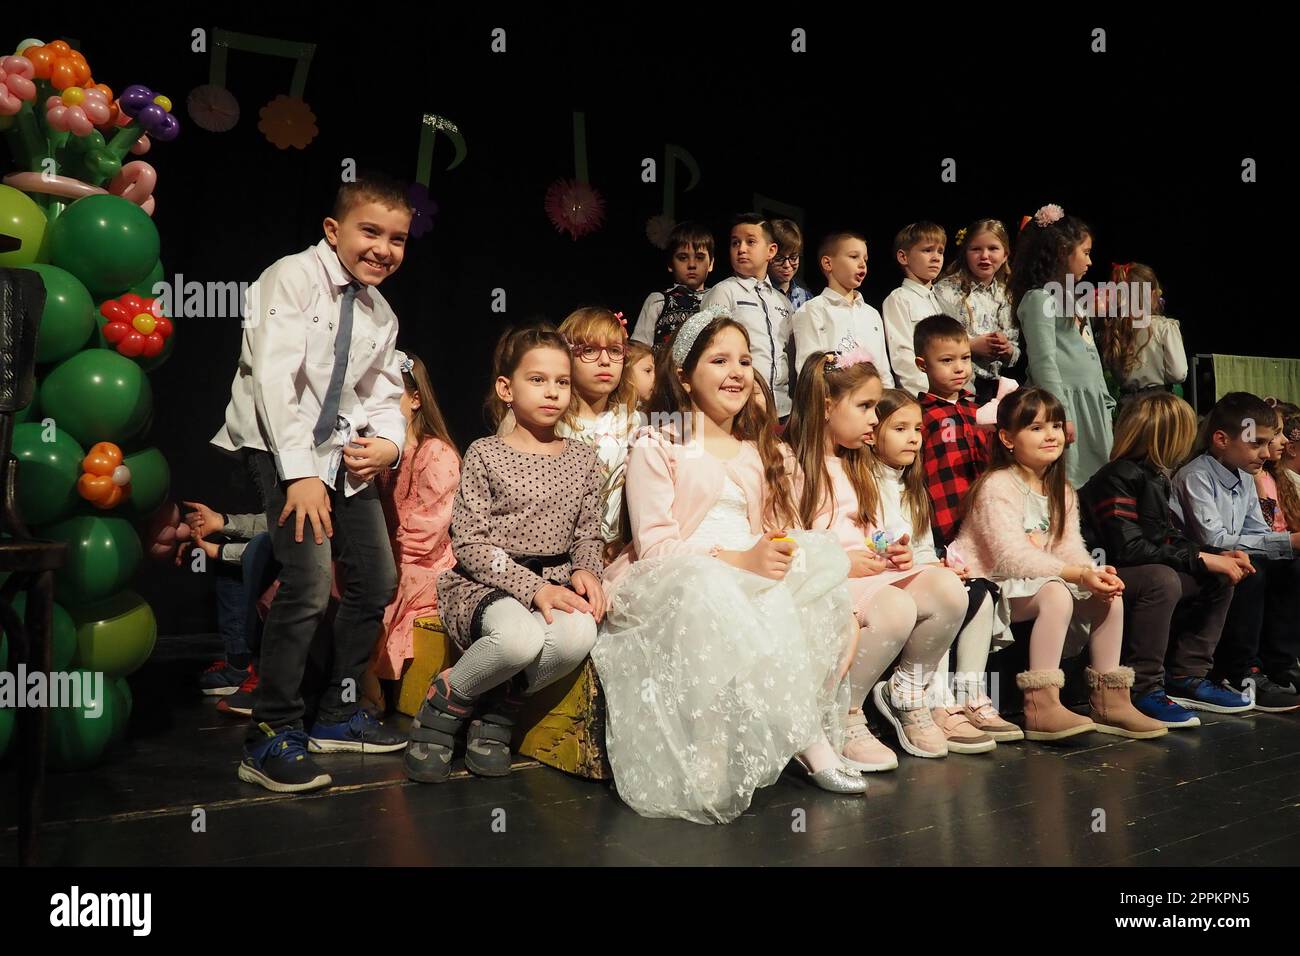 Sremska Mitrovica, Serbien, 8. März 2022 Kinderchorvorstellung auf der Bühne. Kinder singen. Musikalische Kindergruppe in eleganten Kostümen spielt Weihnachtslieder für Mütter. Dunkle Szene. Stockfoto